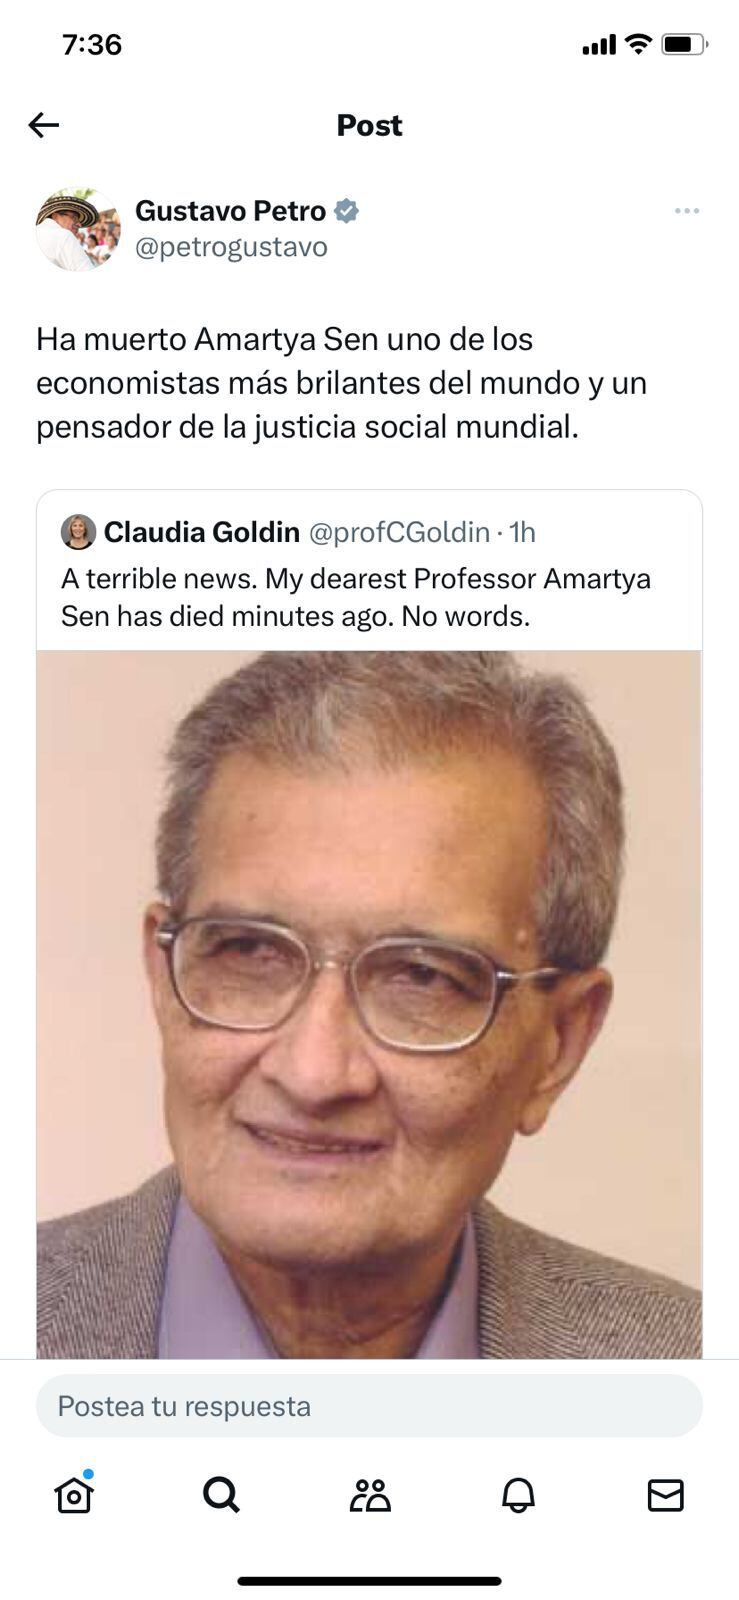 El presidente Gustavo Petro cayó nuevamente en las noticias falsas; esta vez reposteó sobre la supuesta muerte del Premio Nobel de Economía Amartya Kumar Sen.